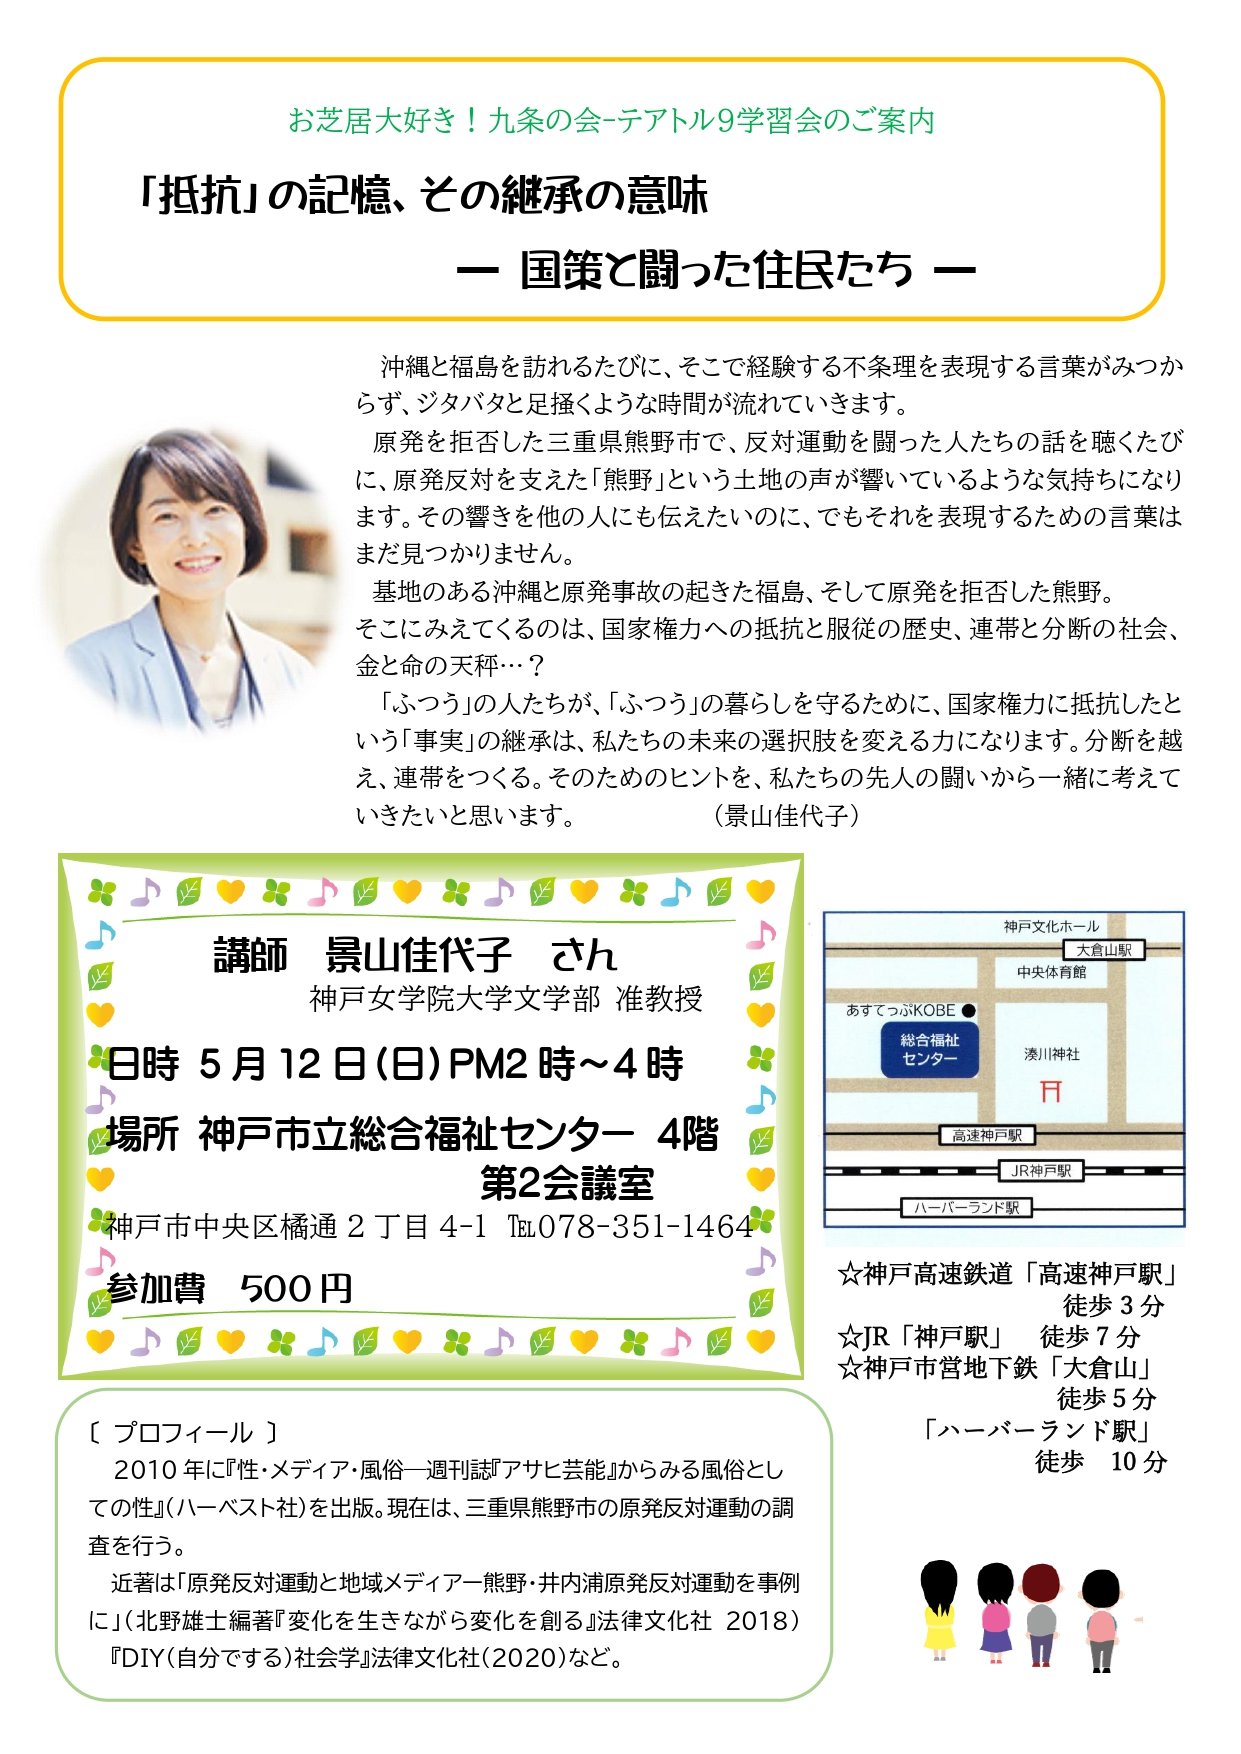 5月12日学習会案内 (2)_page-0001 (1).jpg